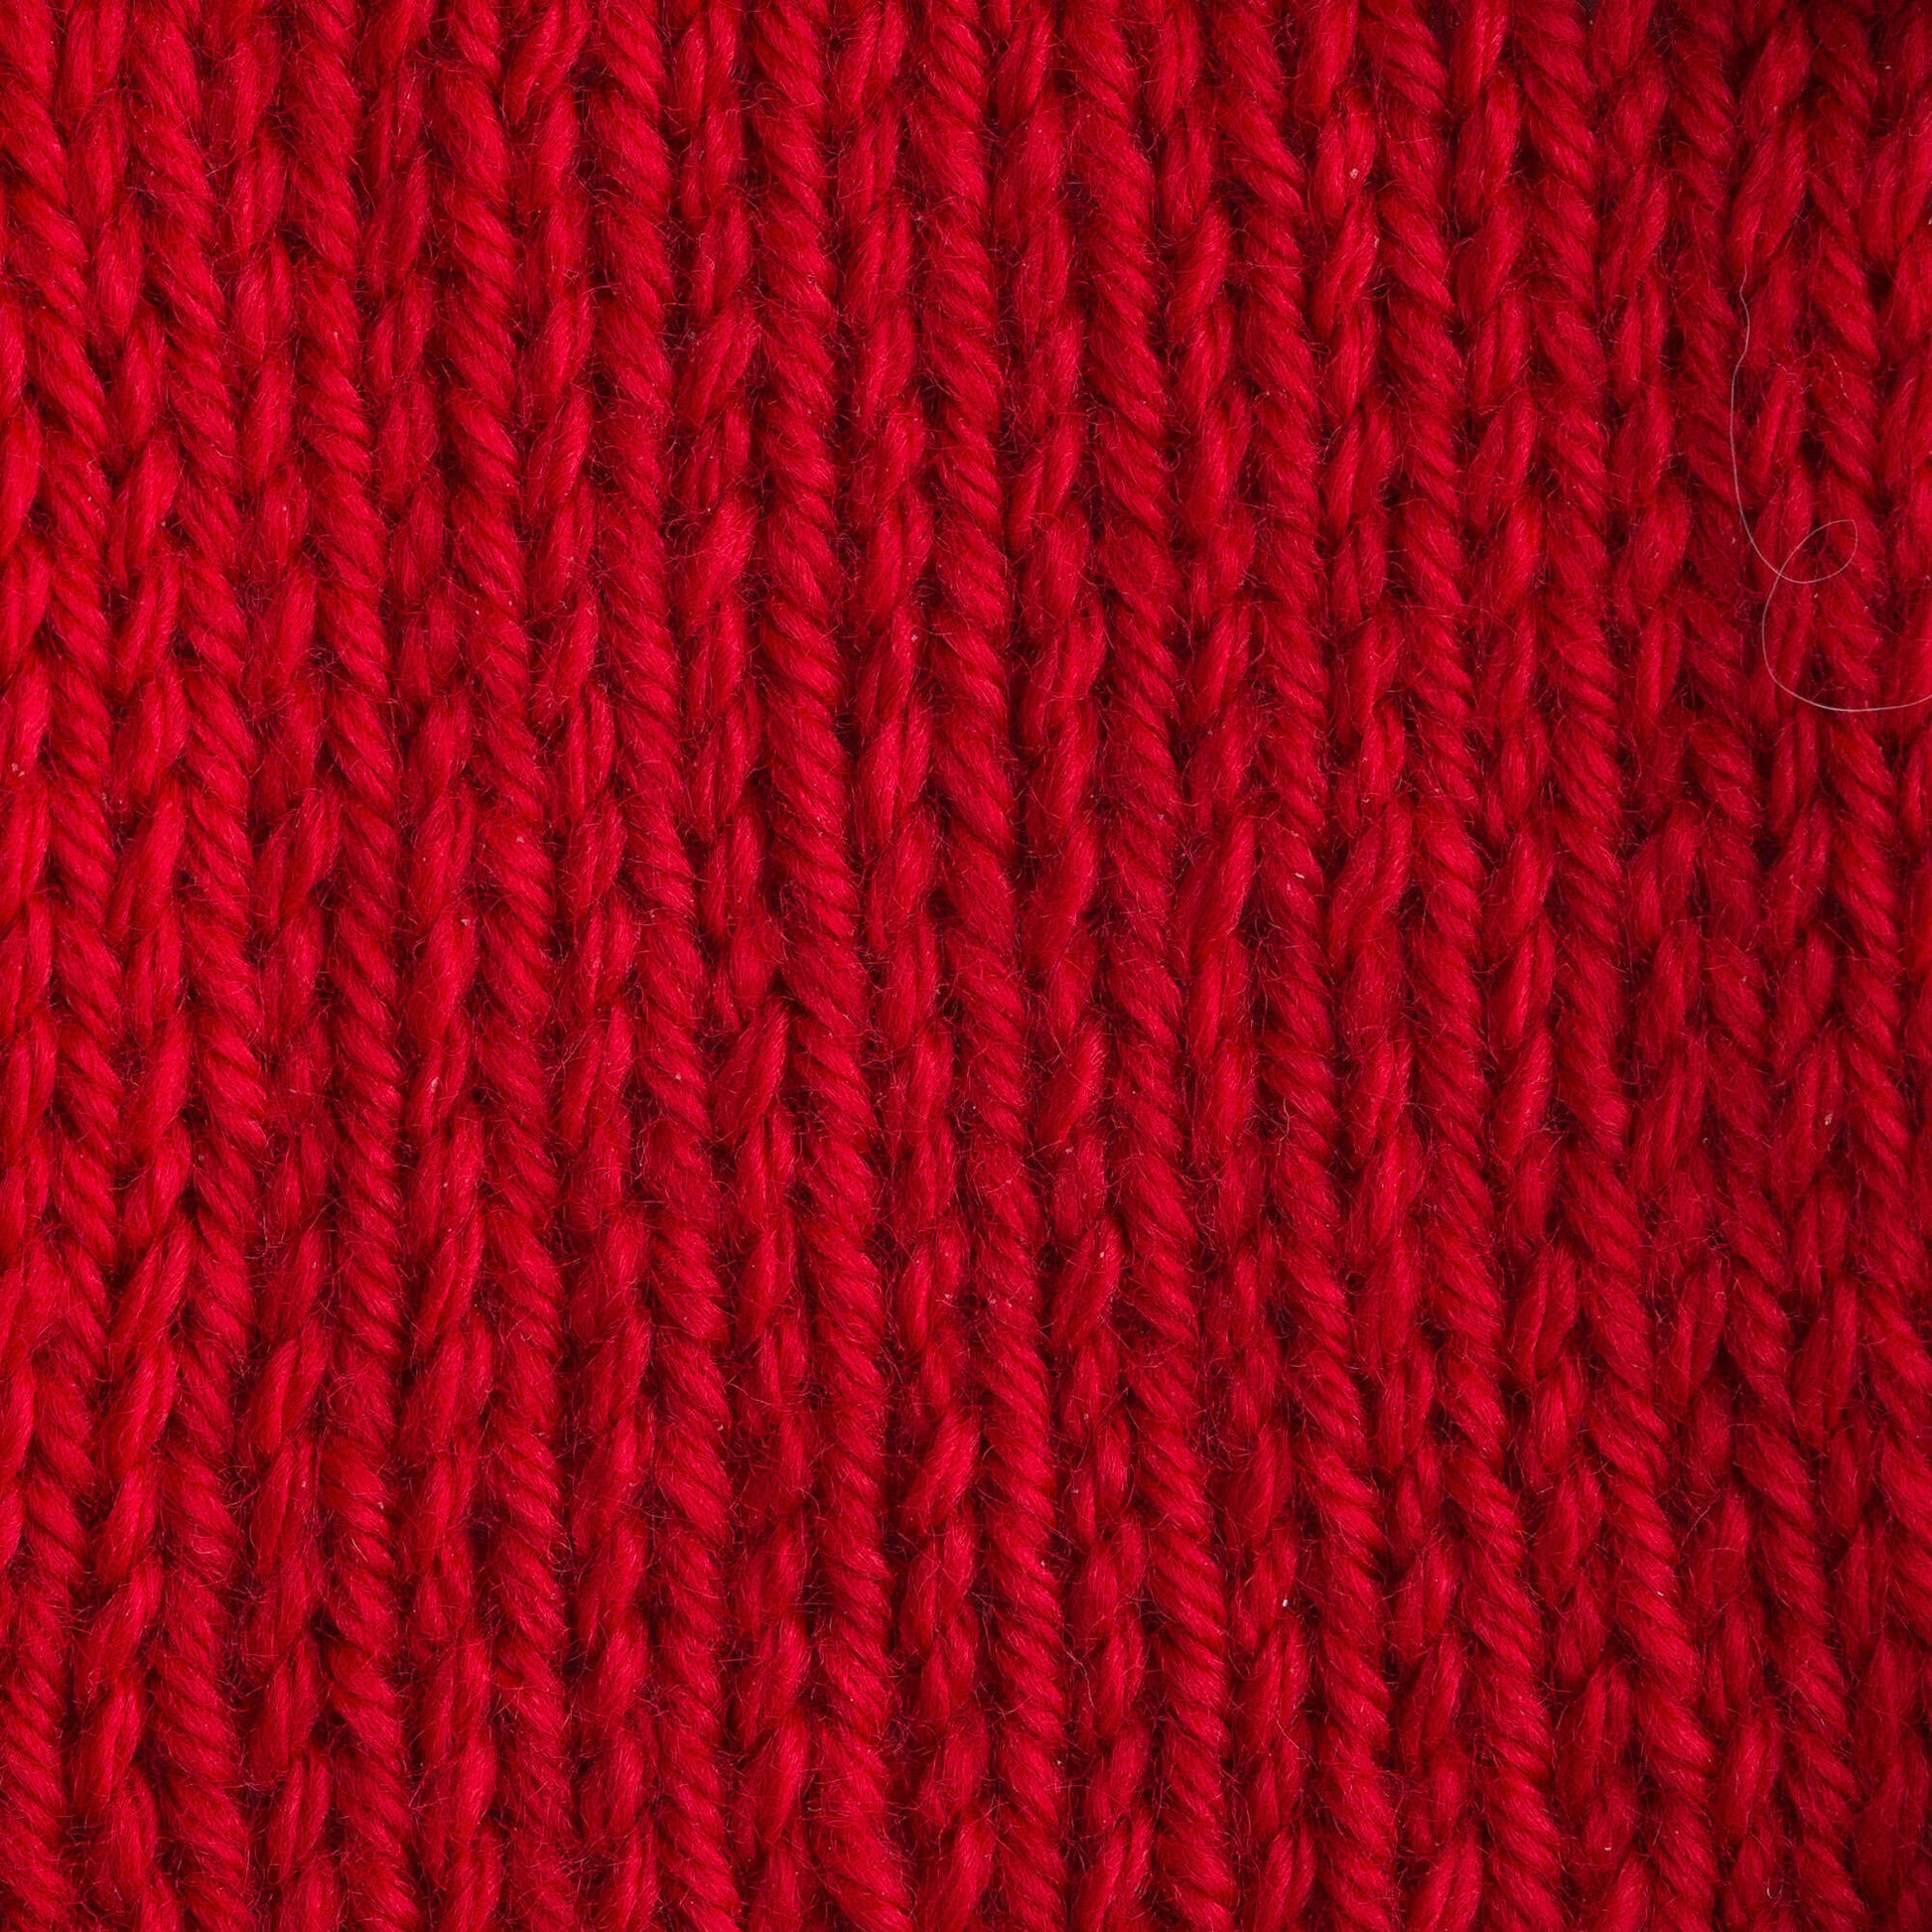 Bernat Satin Yarn - Clearance Shades Crimson